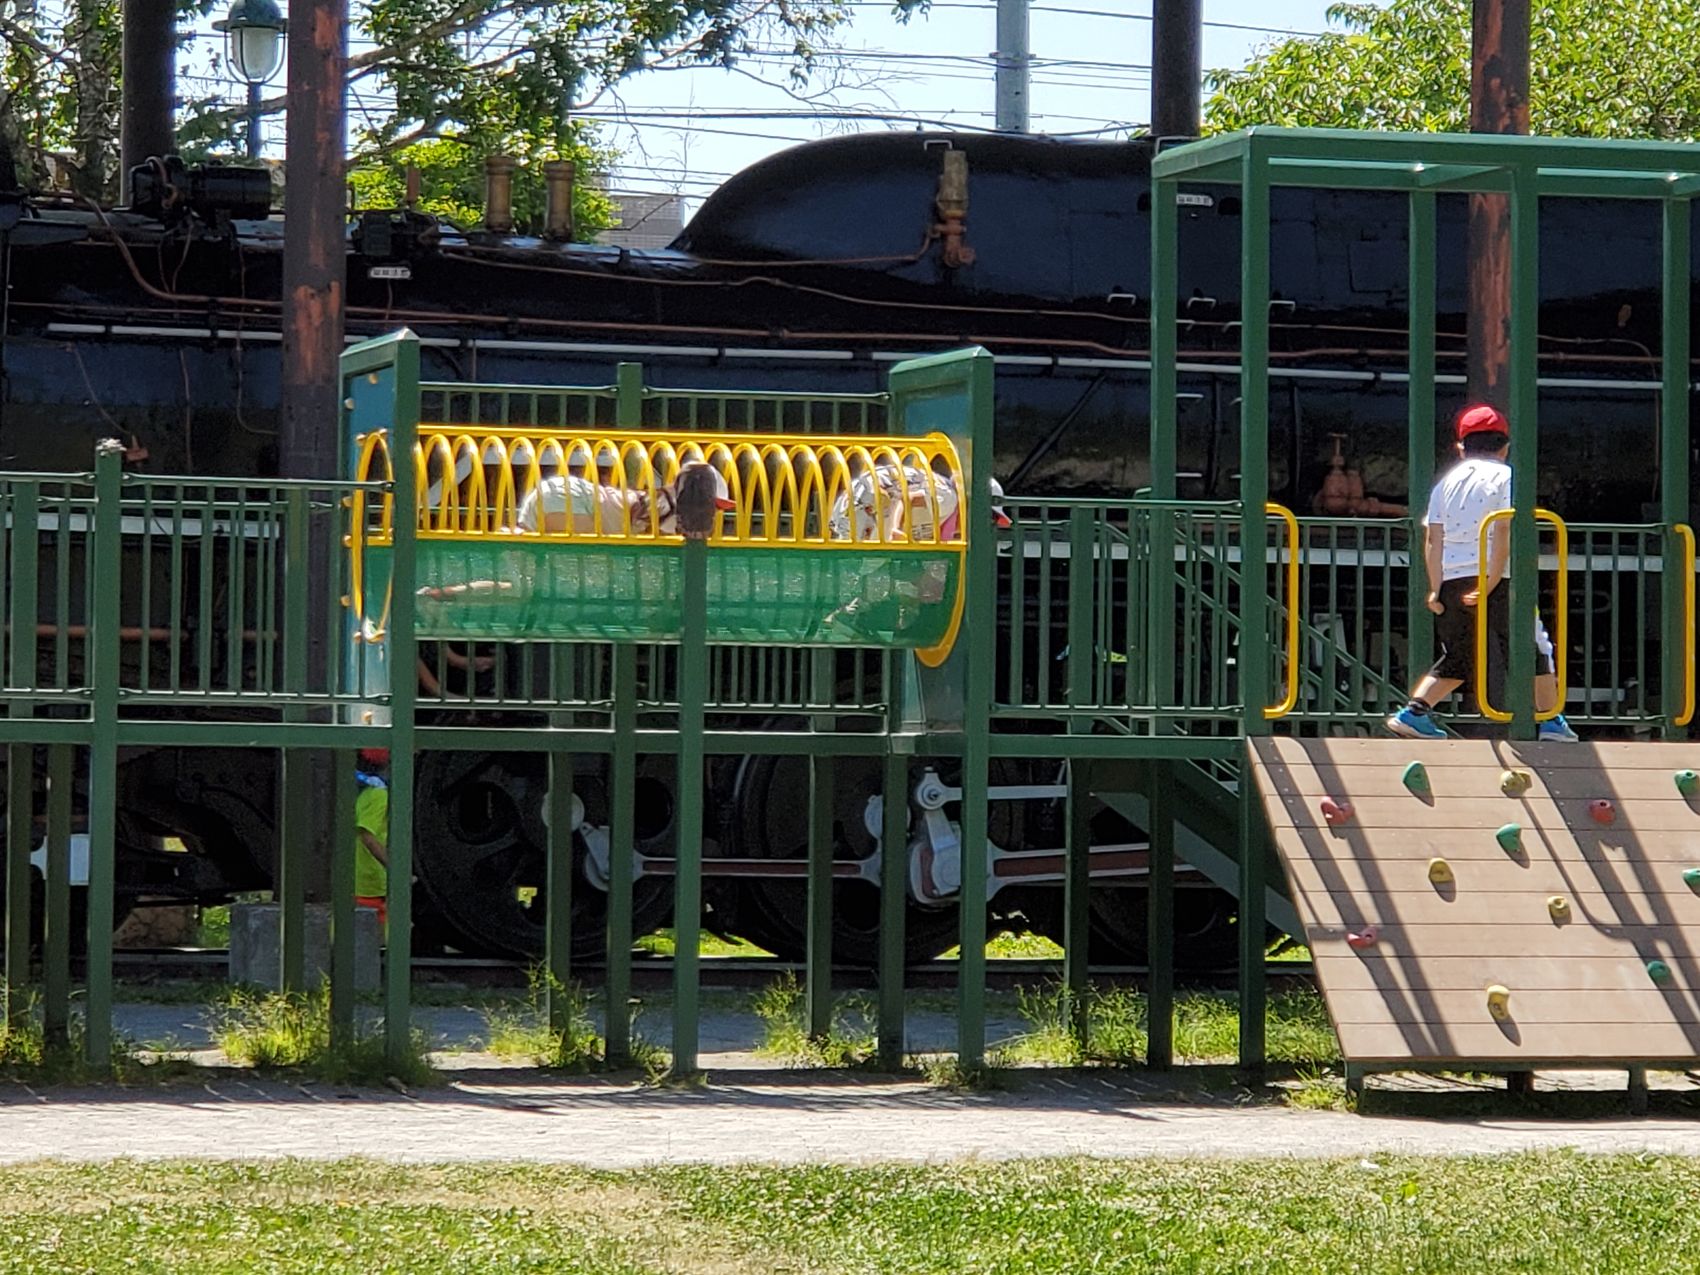 公園に設置された機関車の前にある遊具で遊ぶ、赤や白の帽子をかぶった体操着姿の子供たちの写真